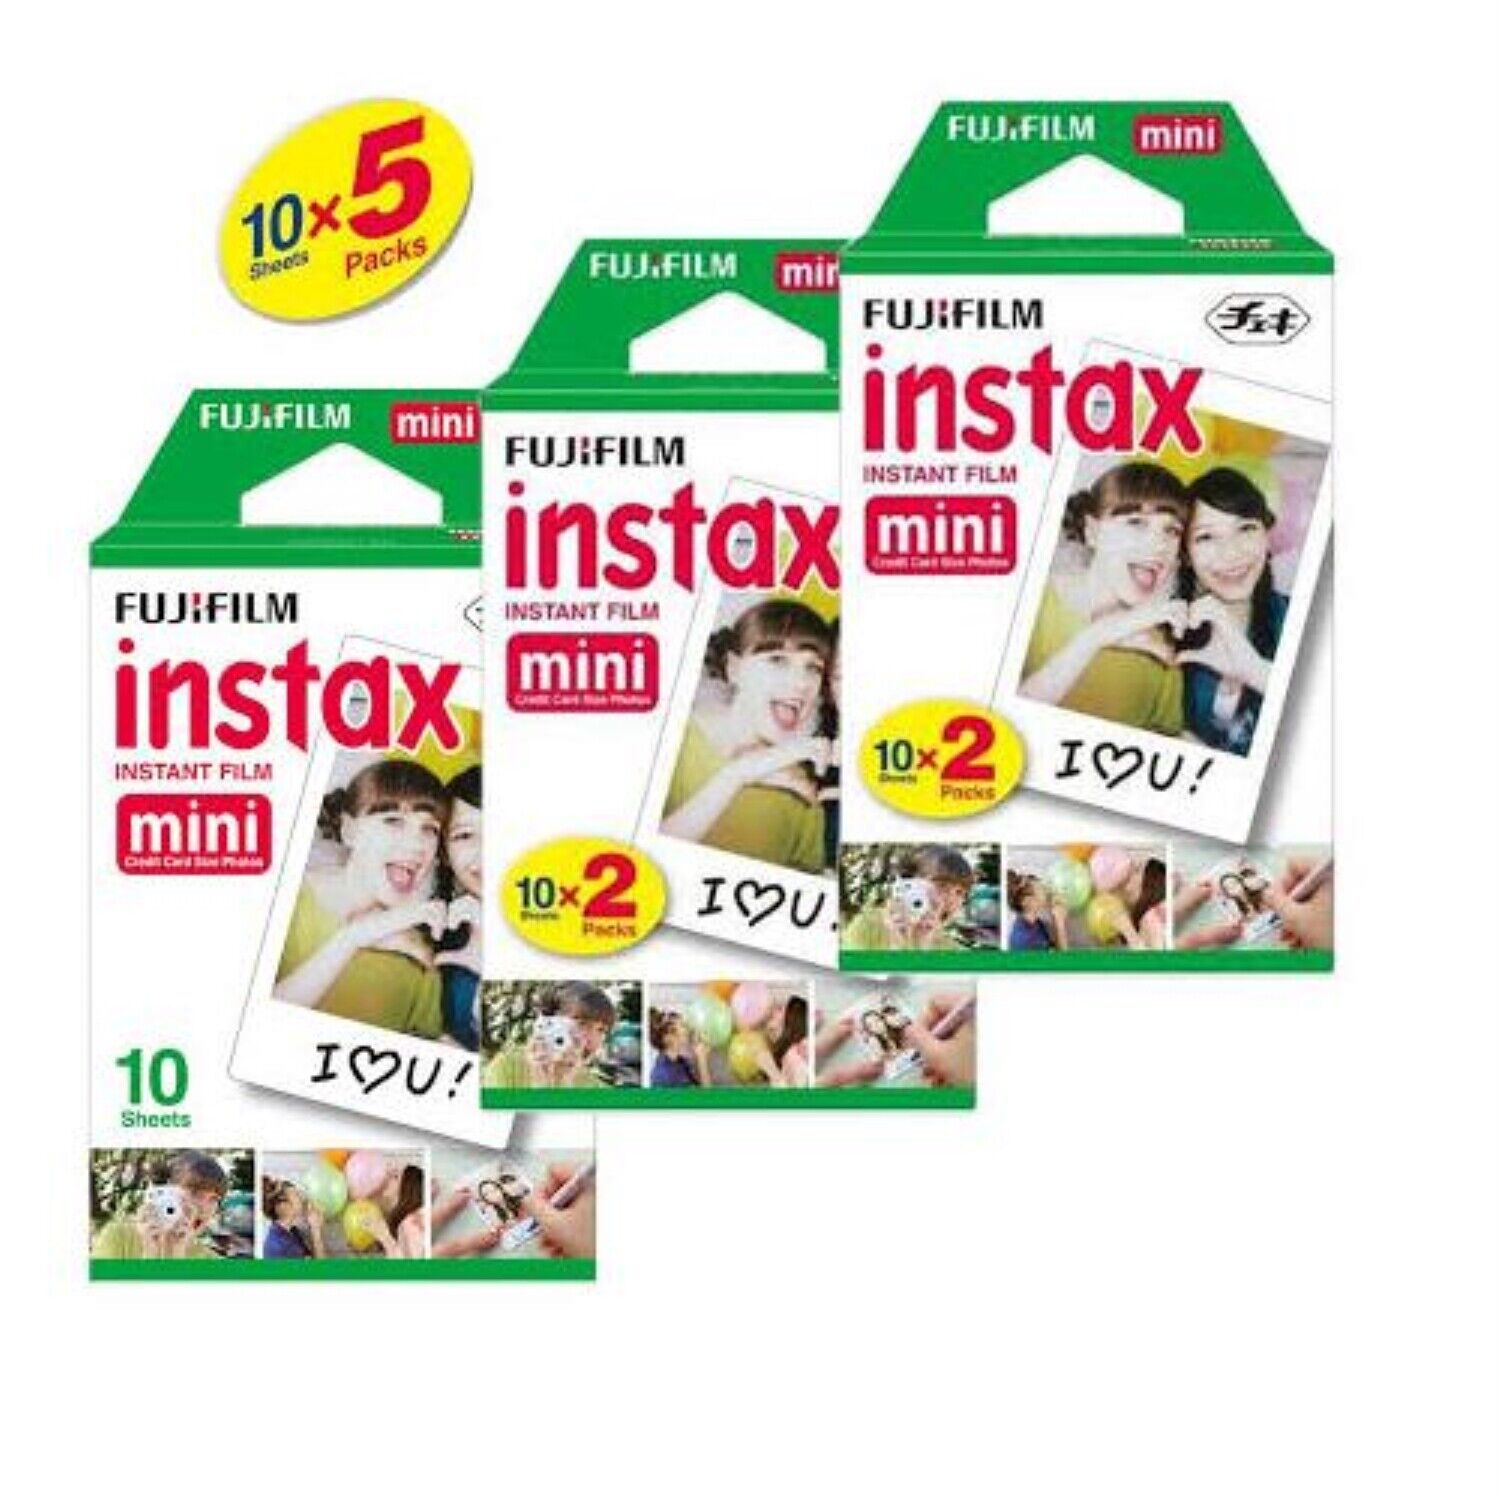 Fujifilm Instax Mini Instant Film 10 Sheets x 5 Packs For All Fuji Mini 8 Camera Fujifilm 96090 - фотография #2